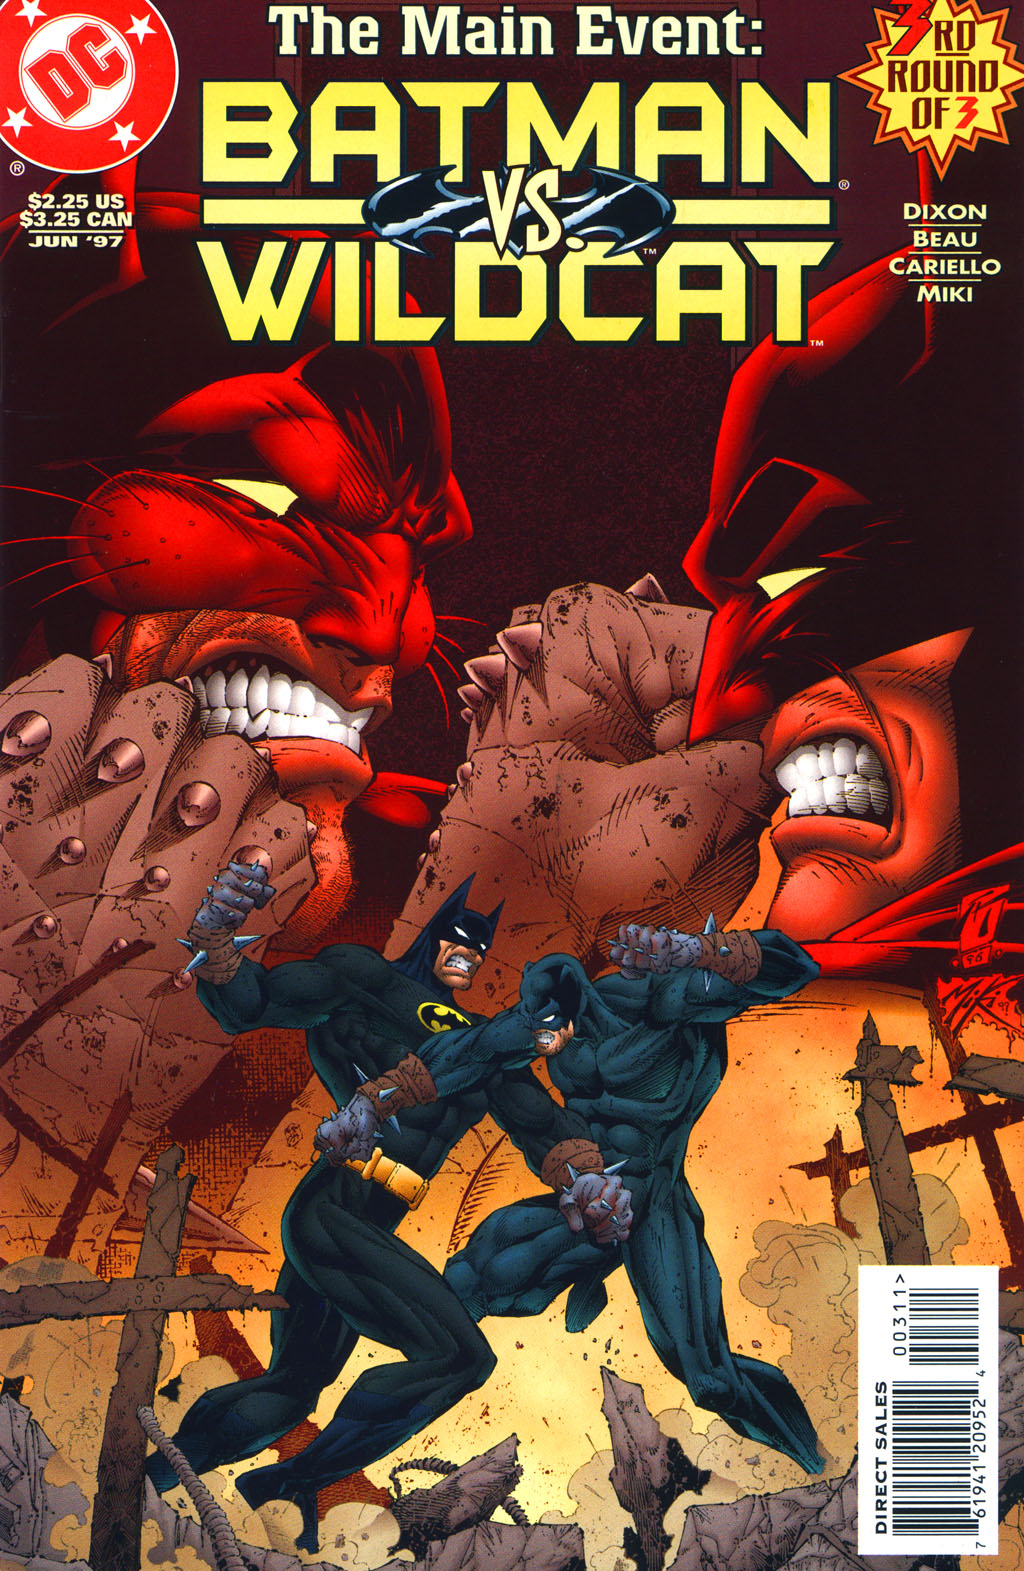 Read online Batman/Wildcat comic -  Issue #3 - 1